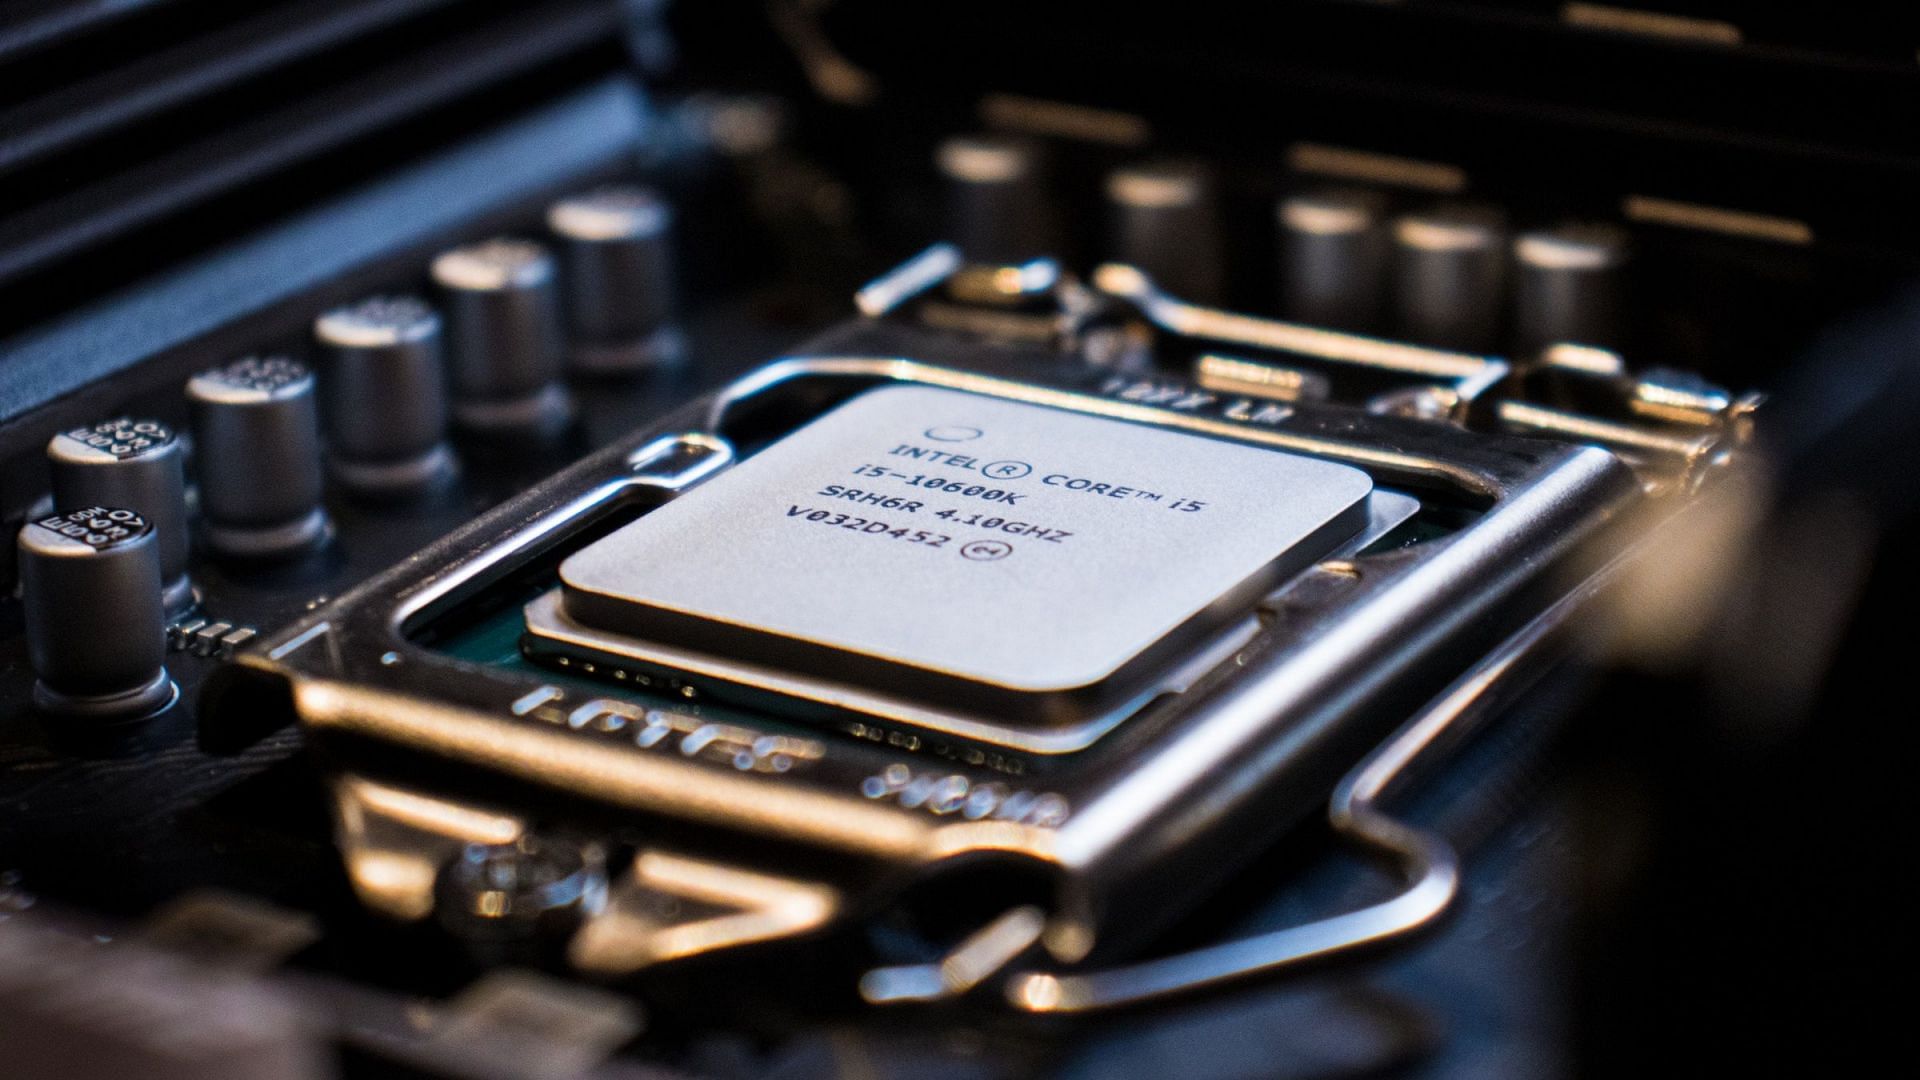 Intel Core i5-10600K (Image via Francesco Vantini/Unsplash)